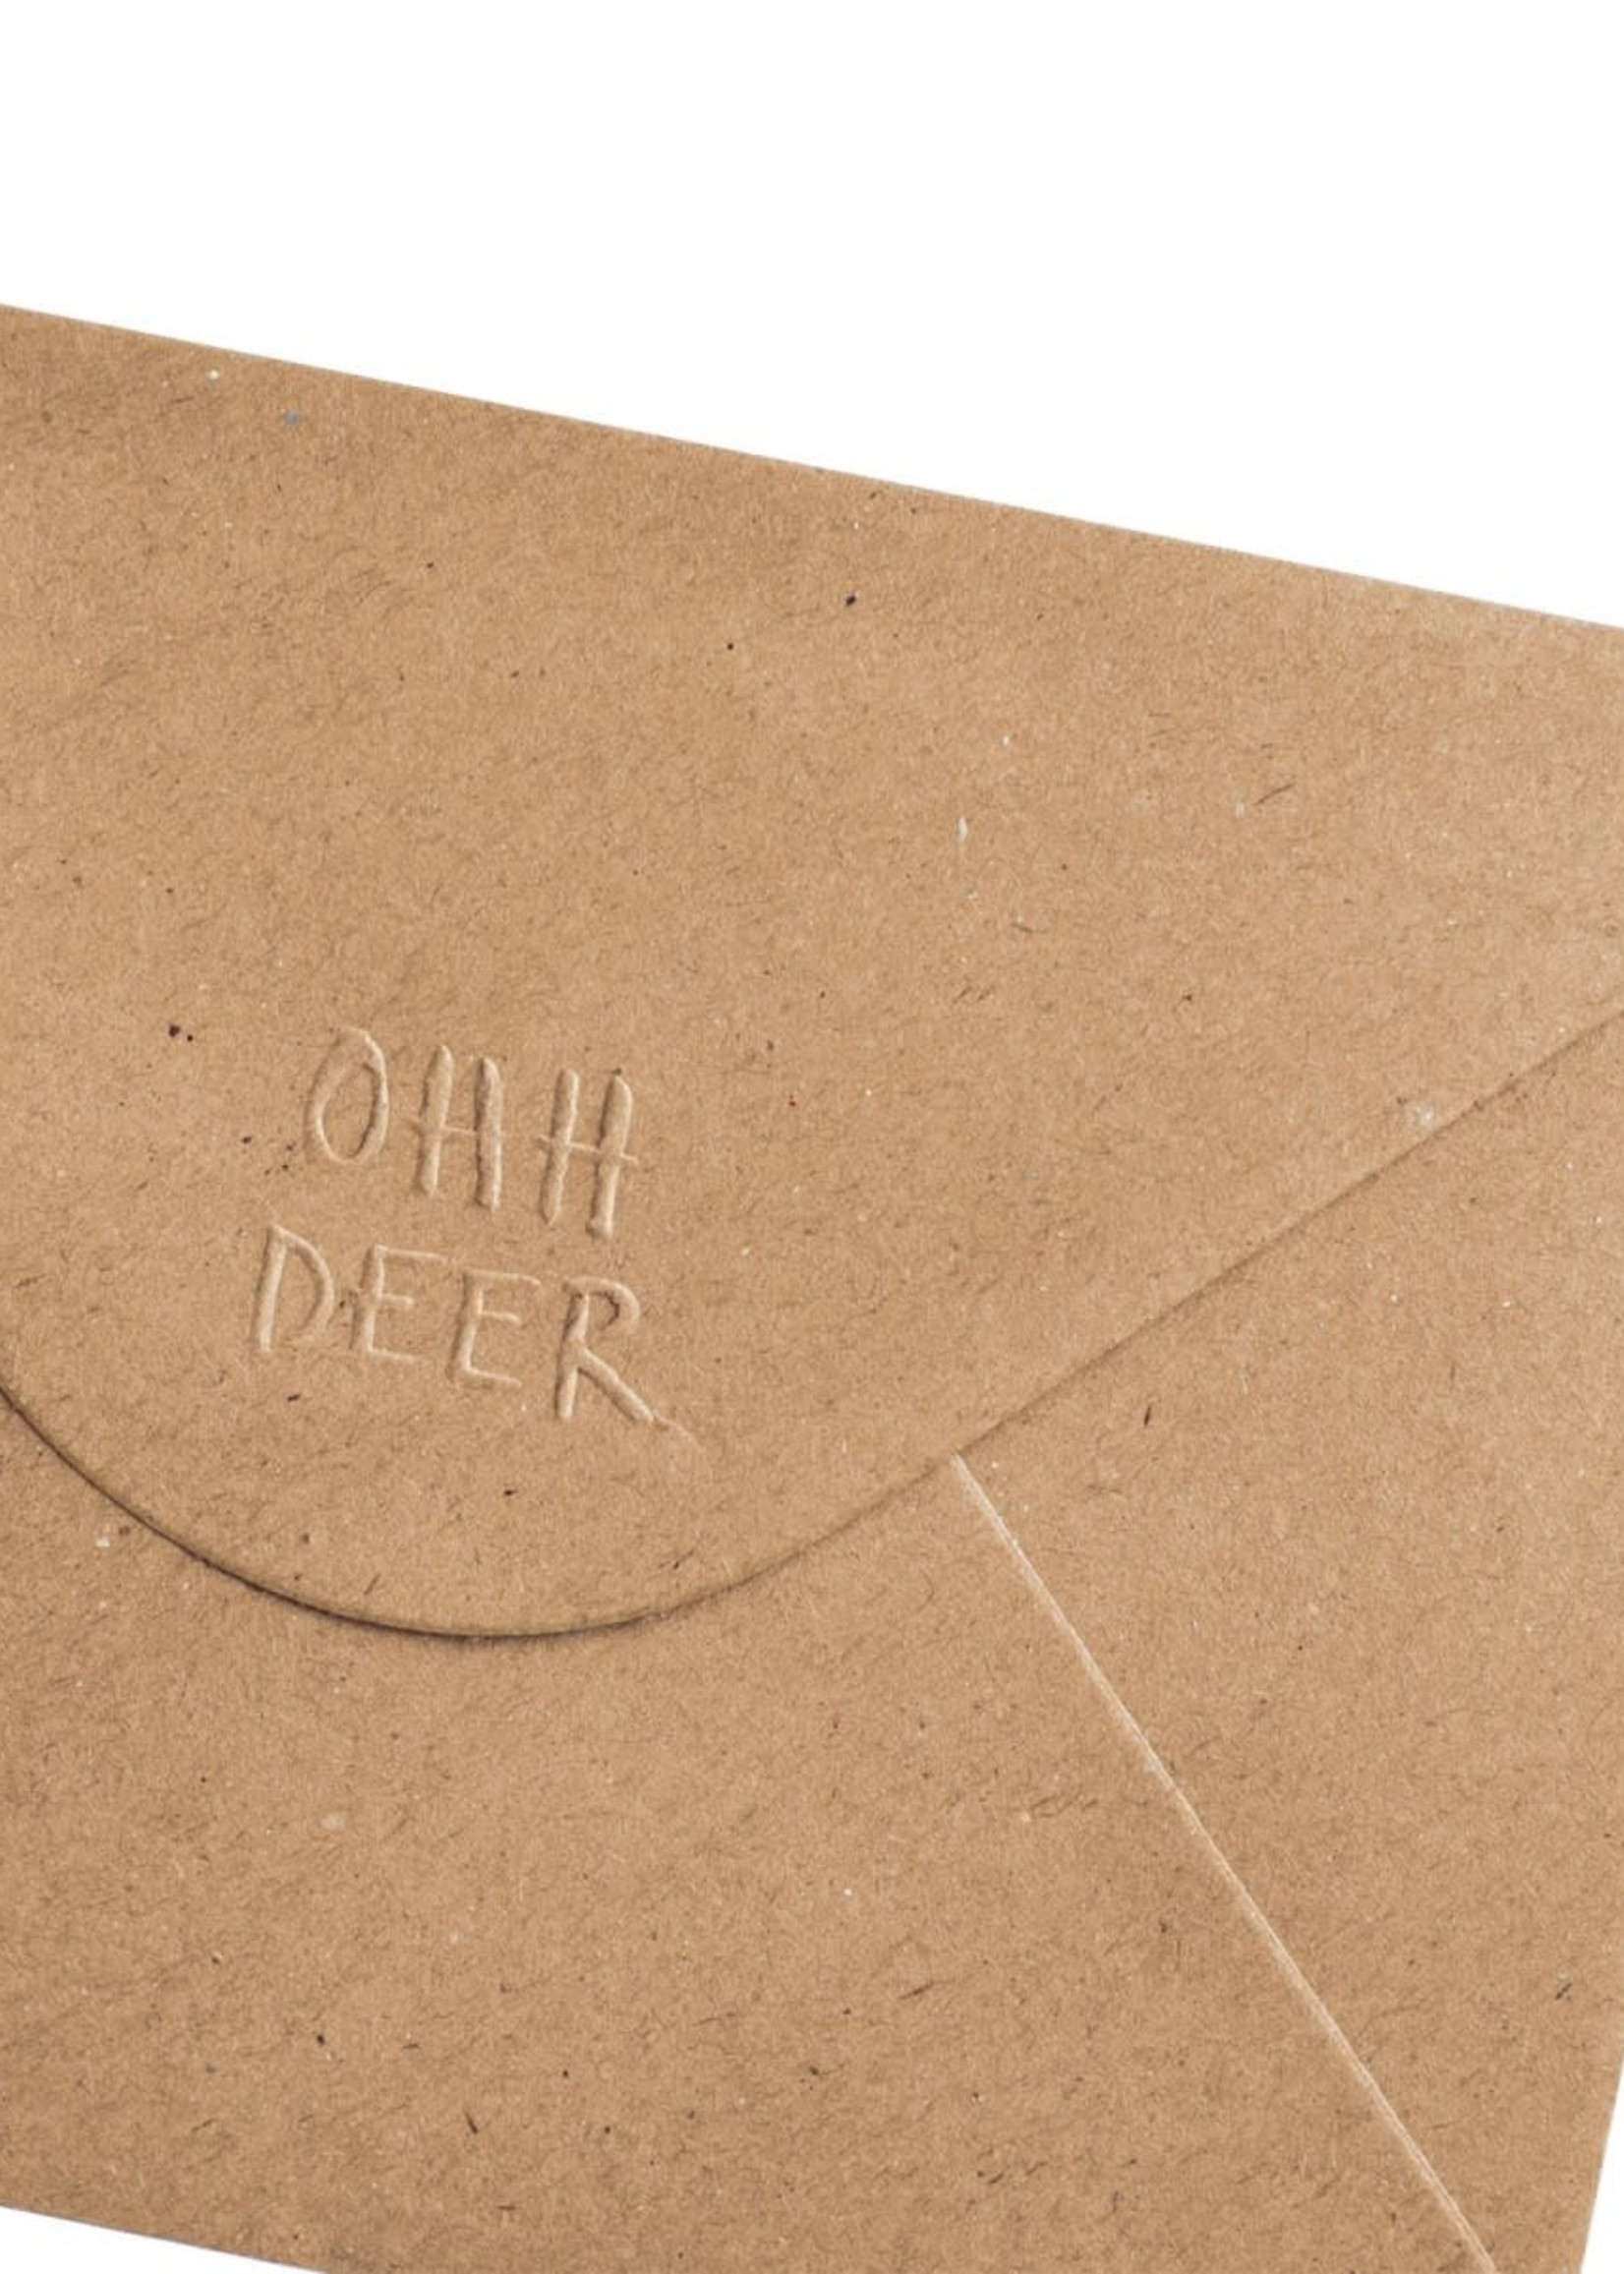 Ohh Deer Sweet Tooth Greetings Card